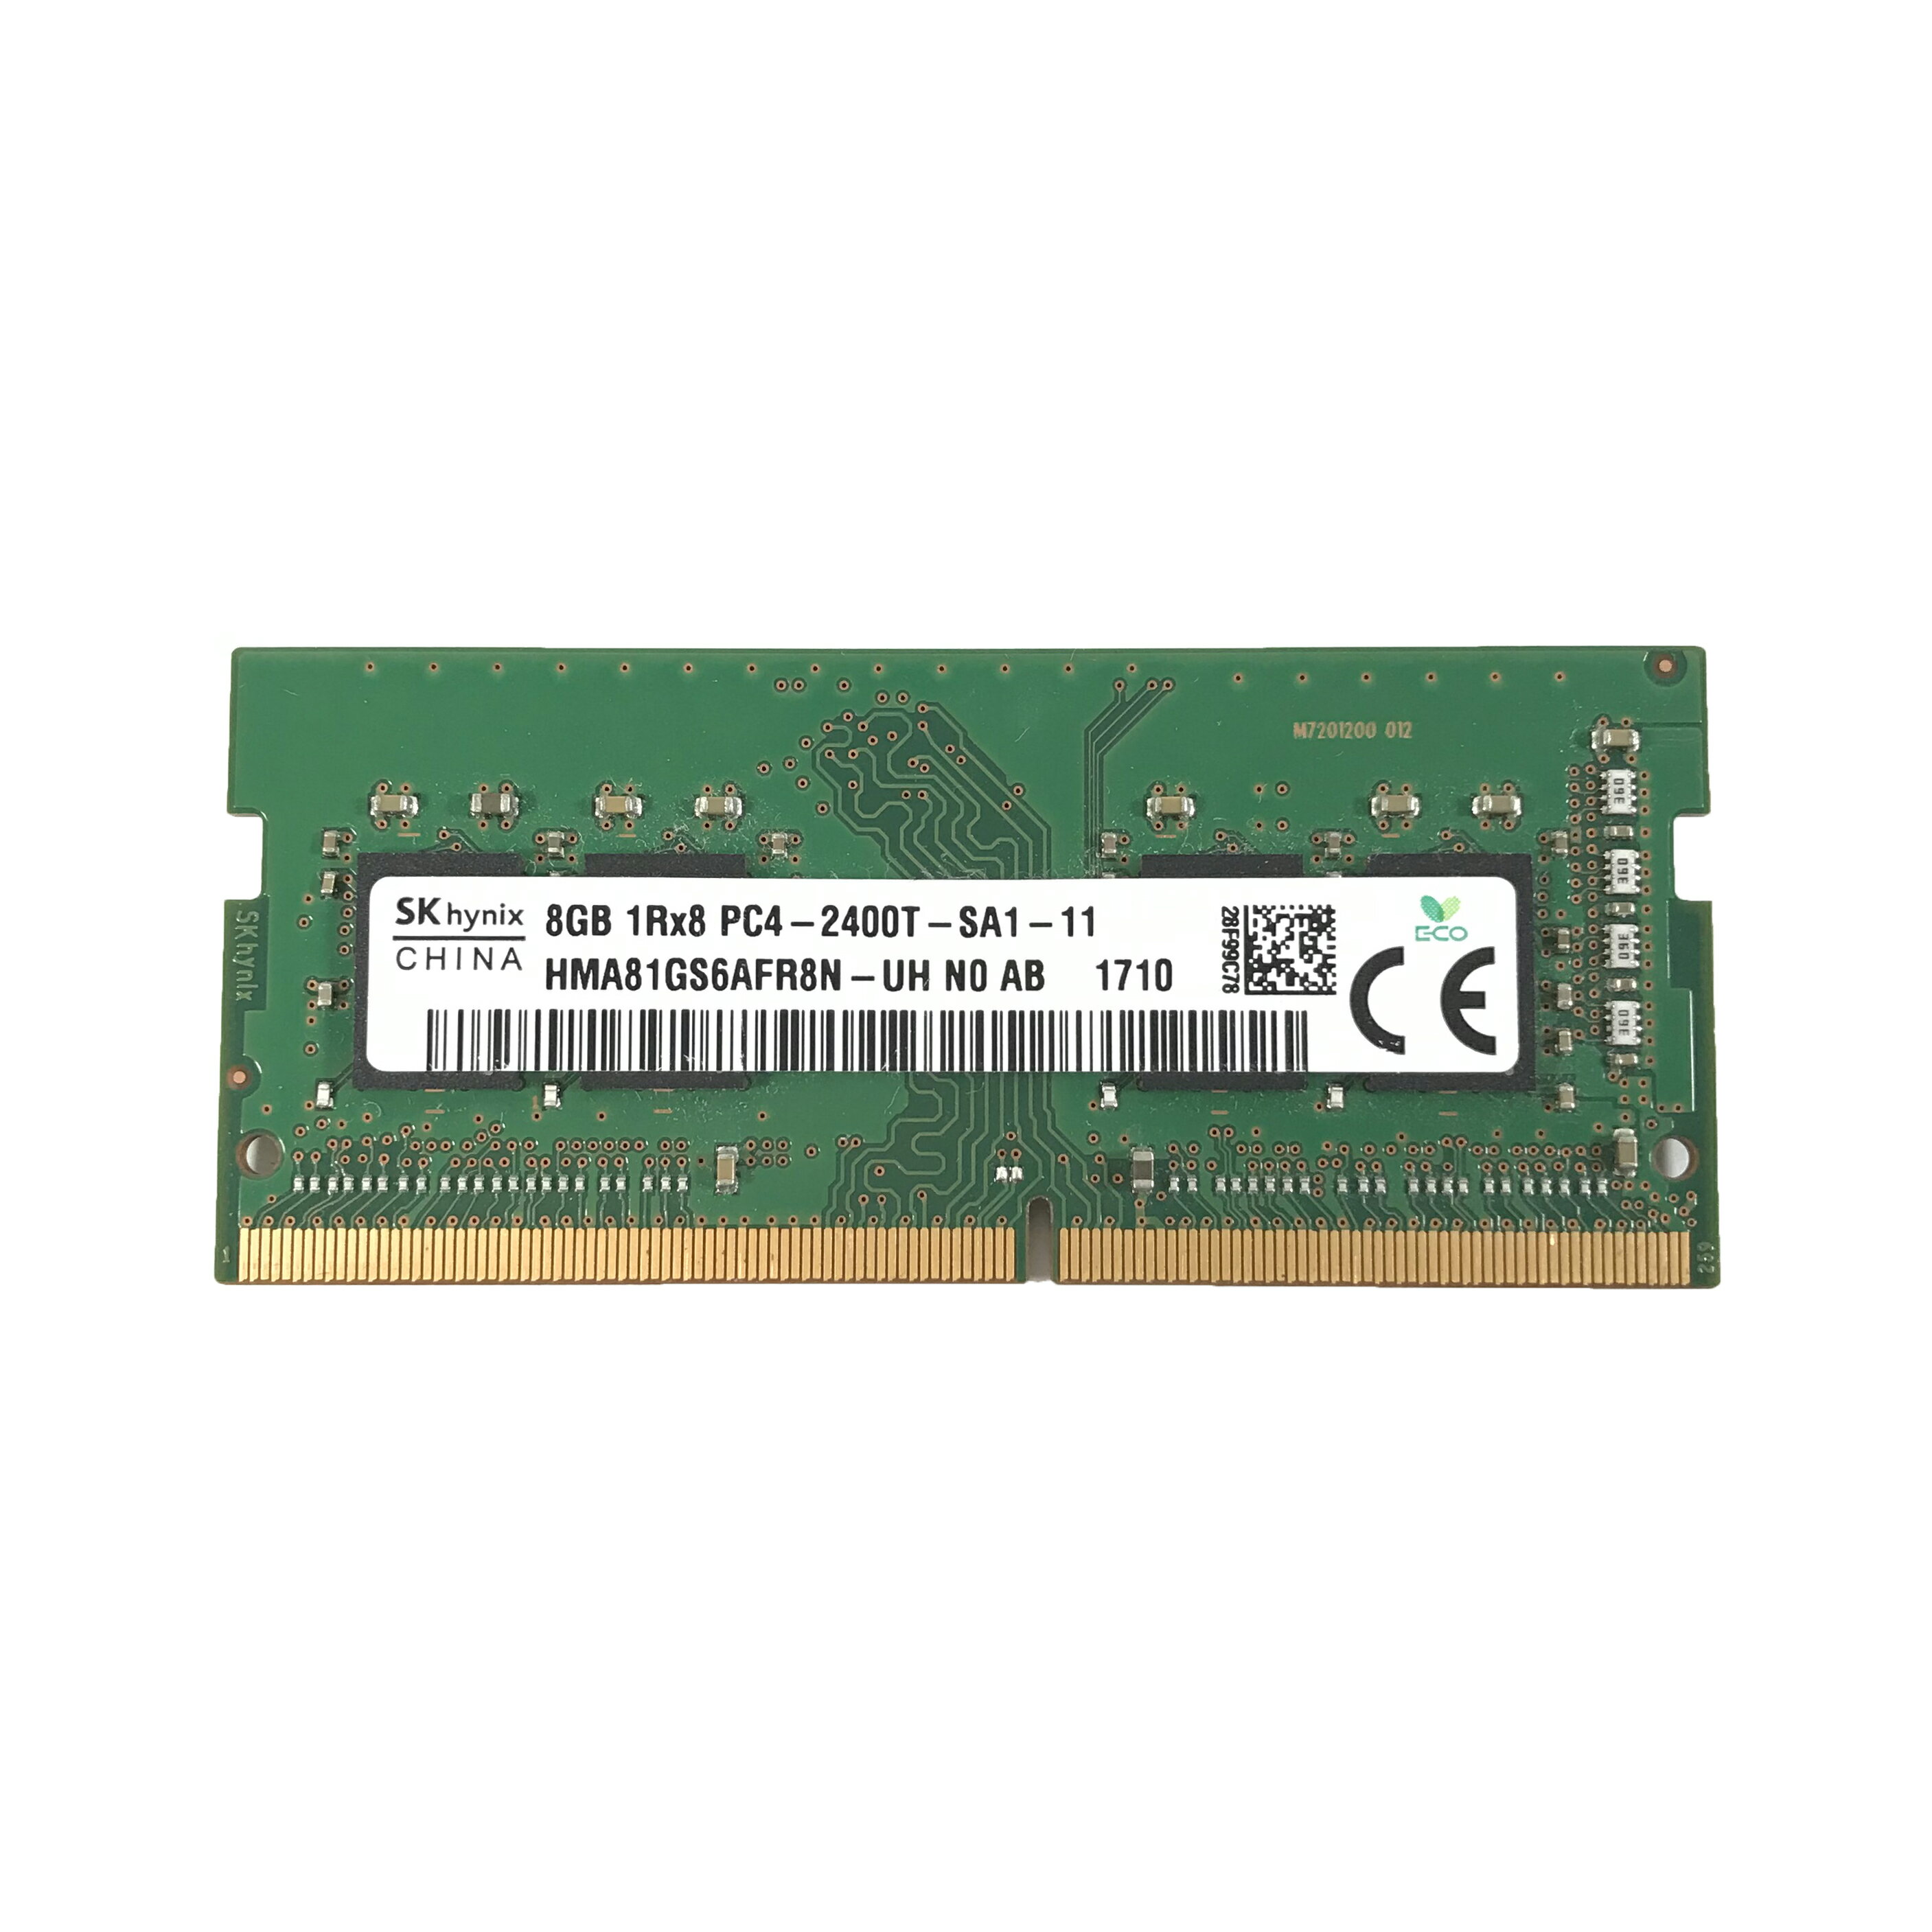 SK hynix 8GB 1Rx8 PC4-2400Tメモリ